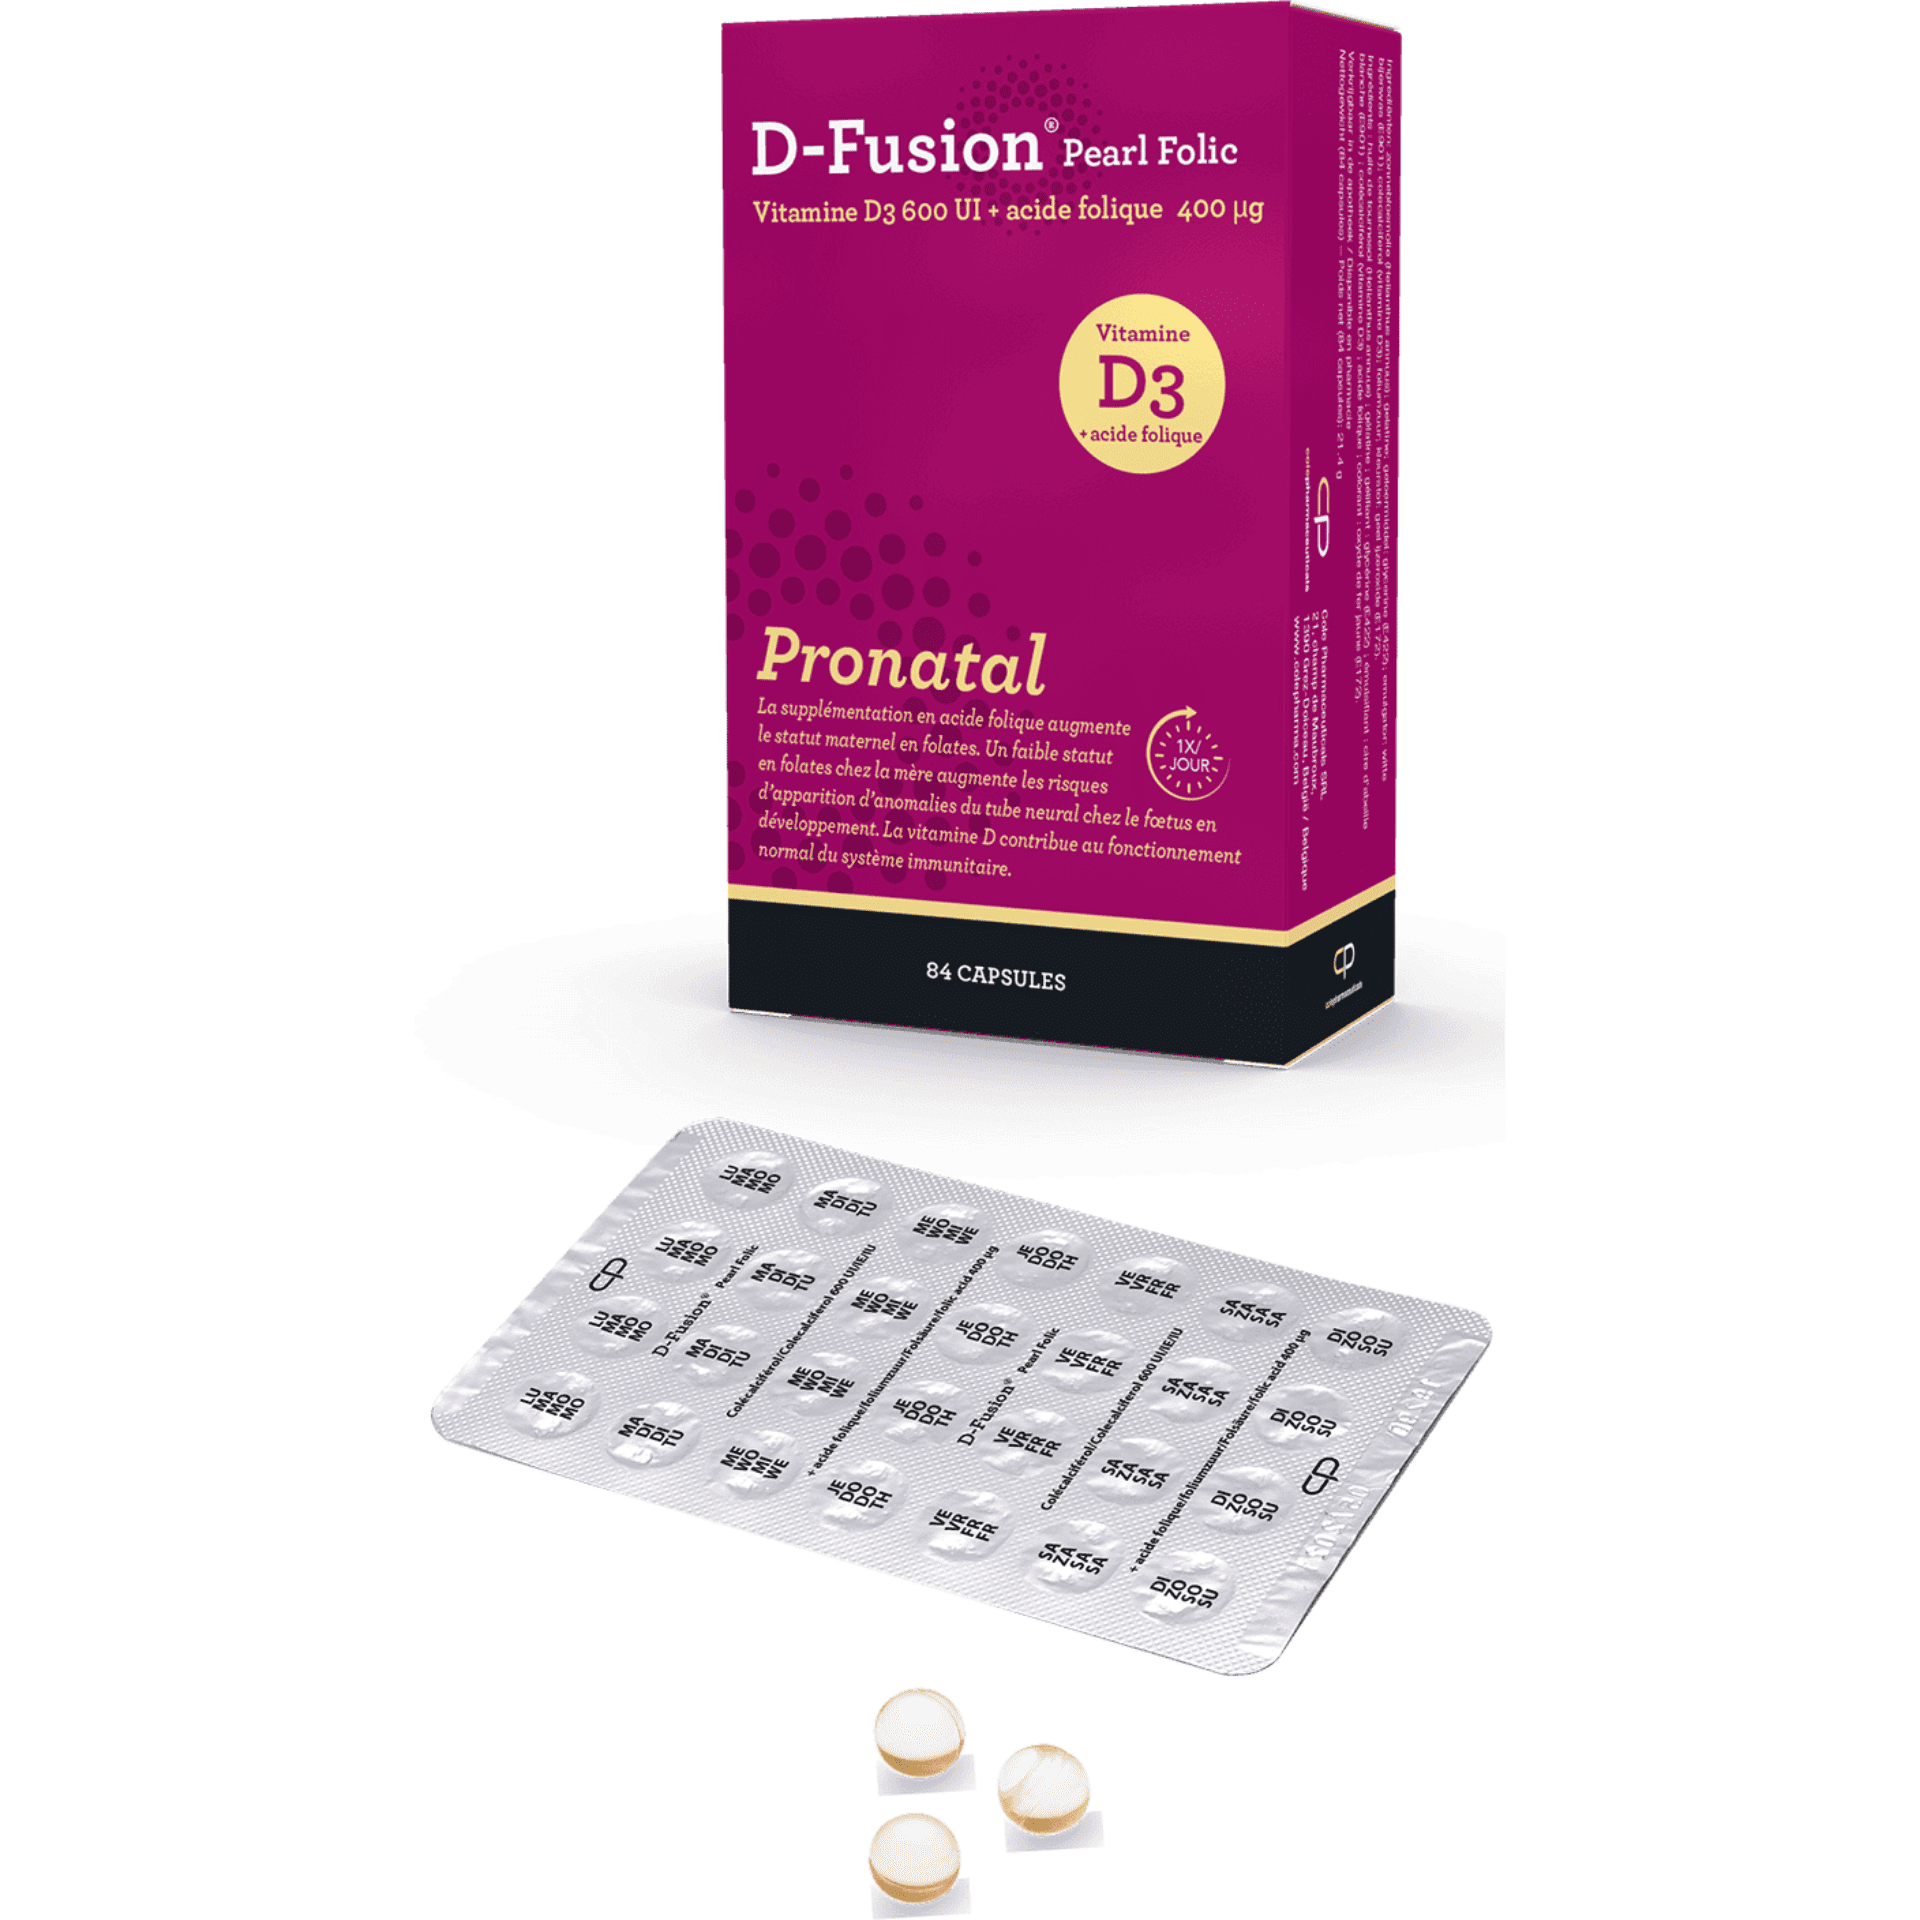 D-Fusion Pearl Folic - Pronatal 84 capsules